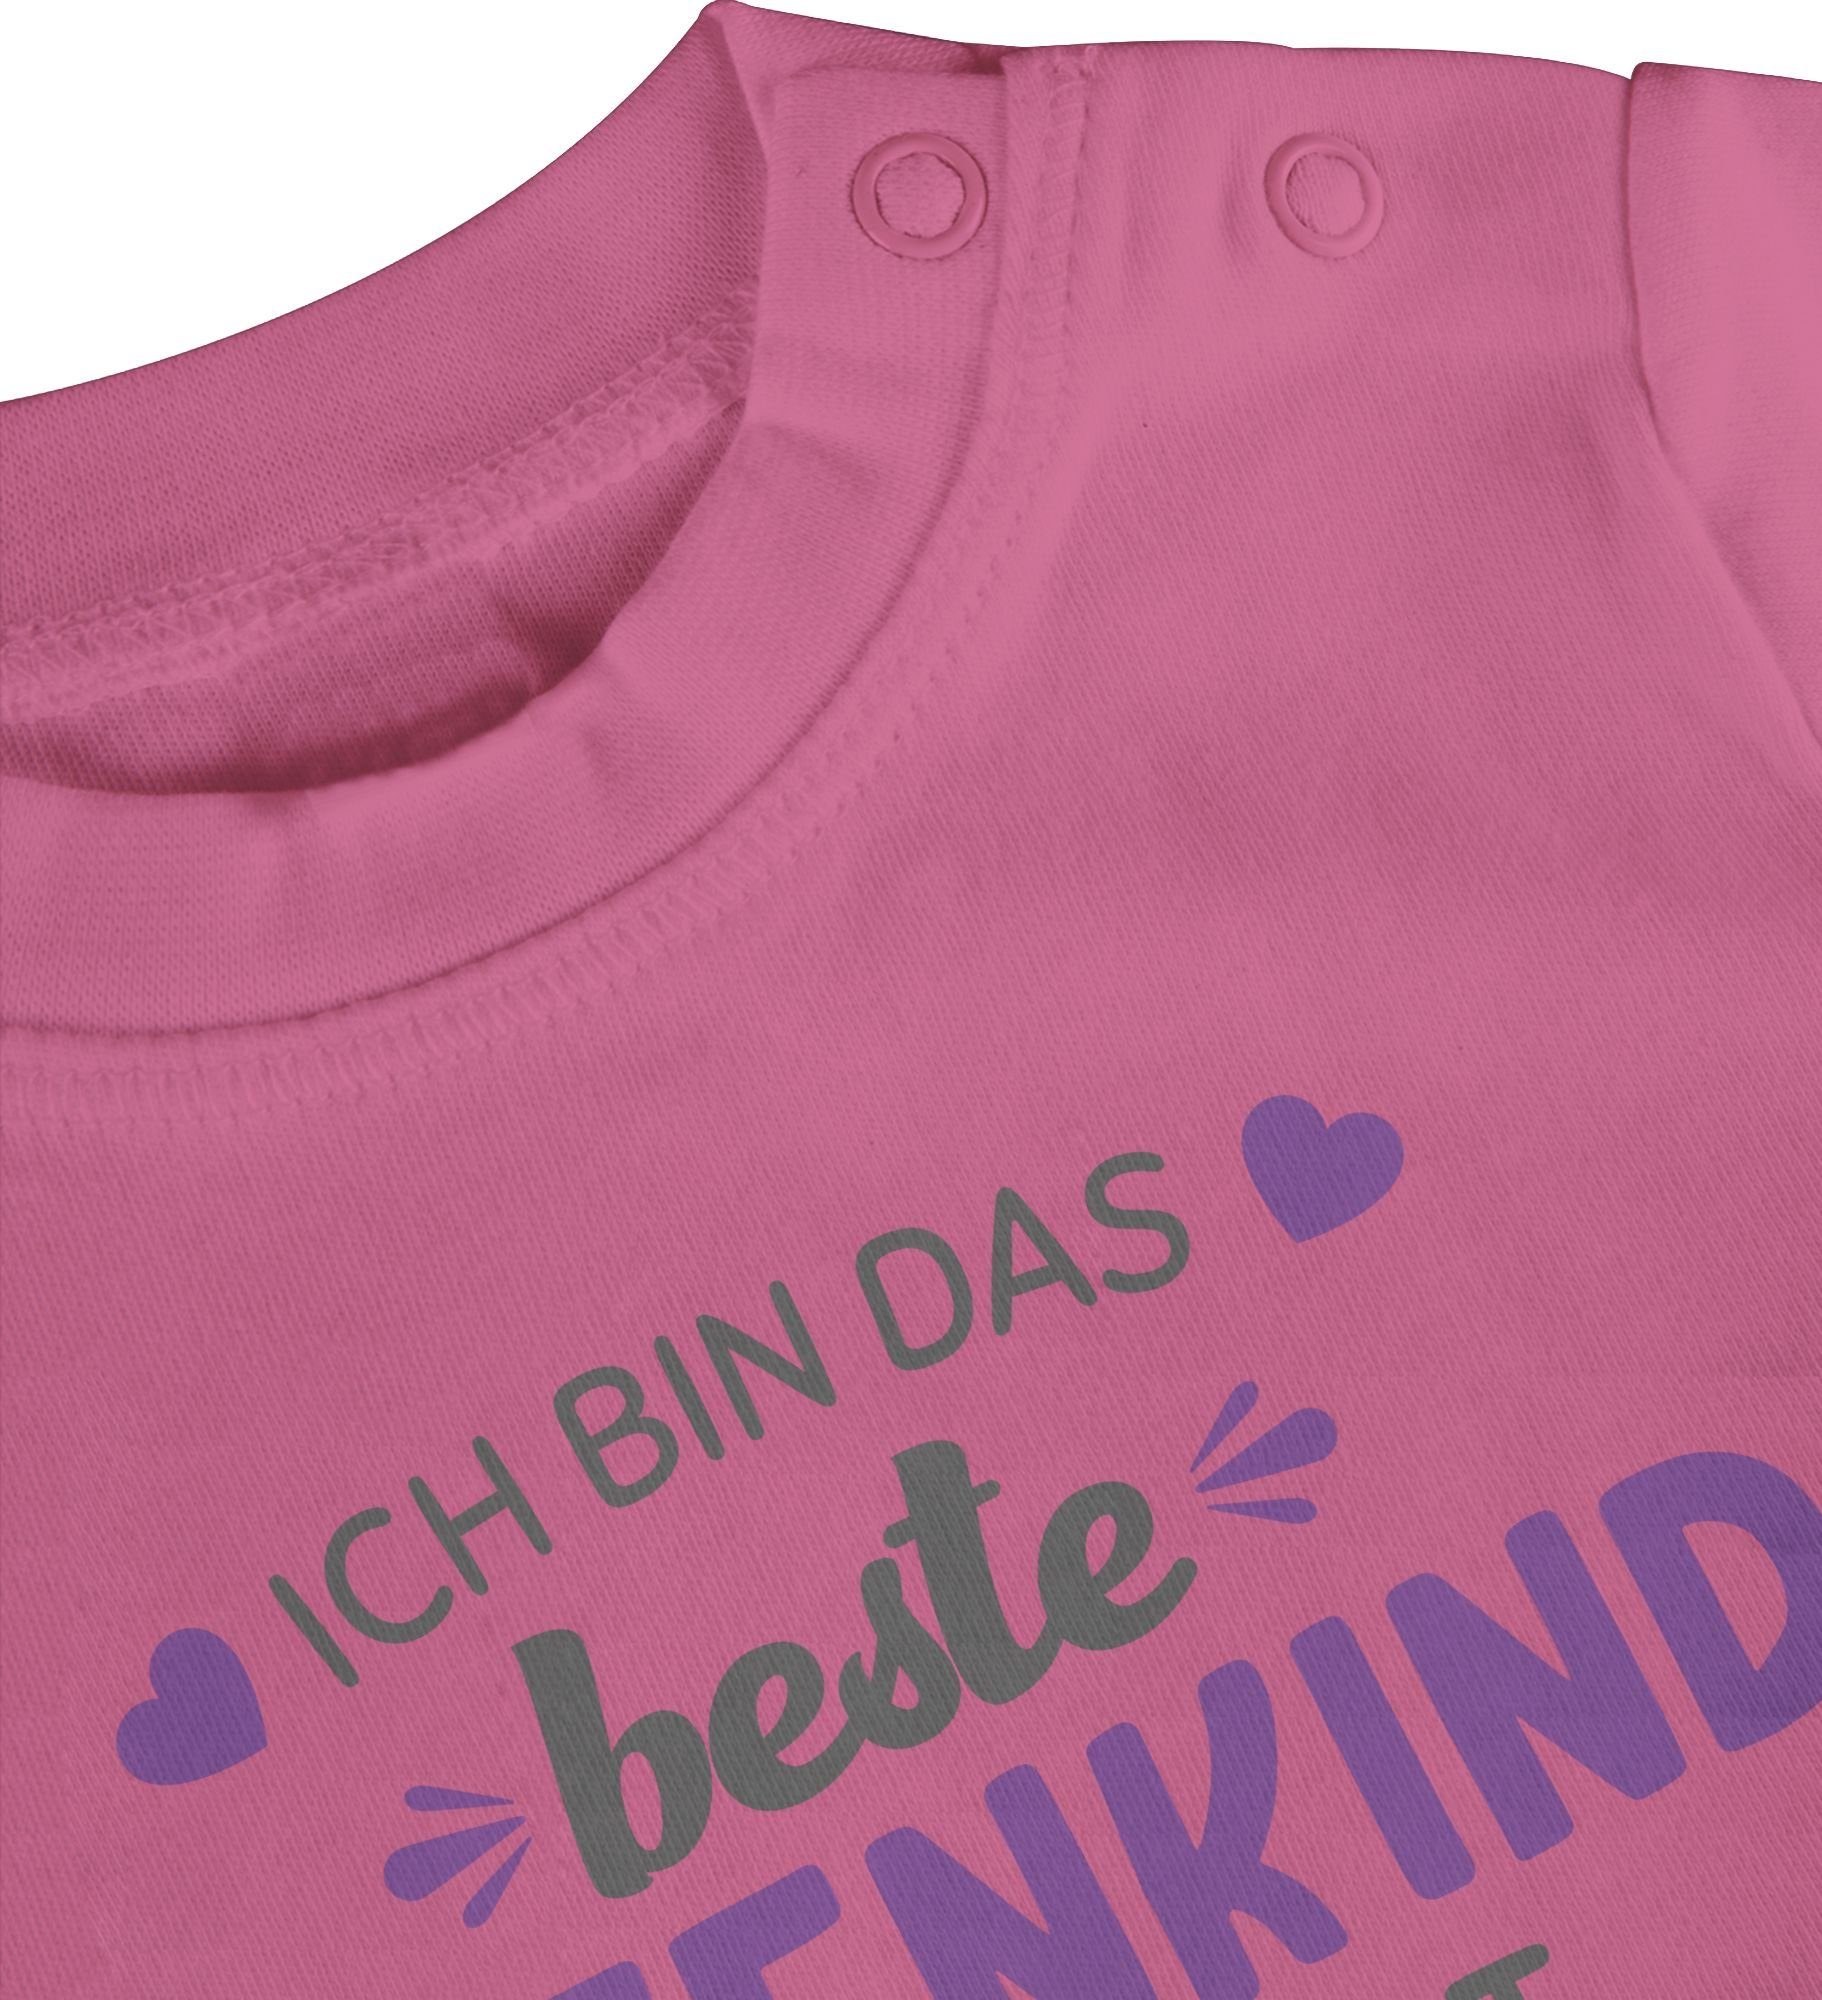 Shirtracer T-Shirt Ich Patentante Baby beste grau/lila Pink Patenkind das bin 2 der Welt